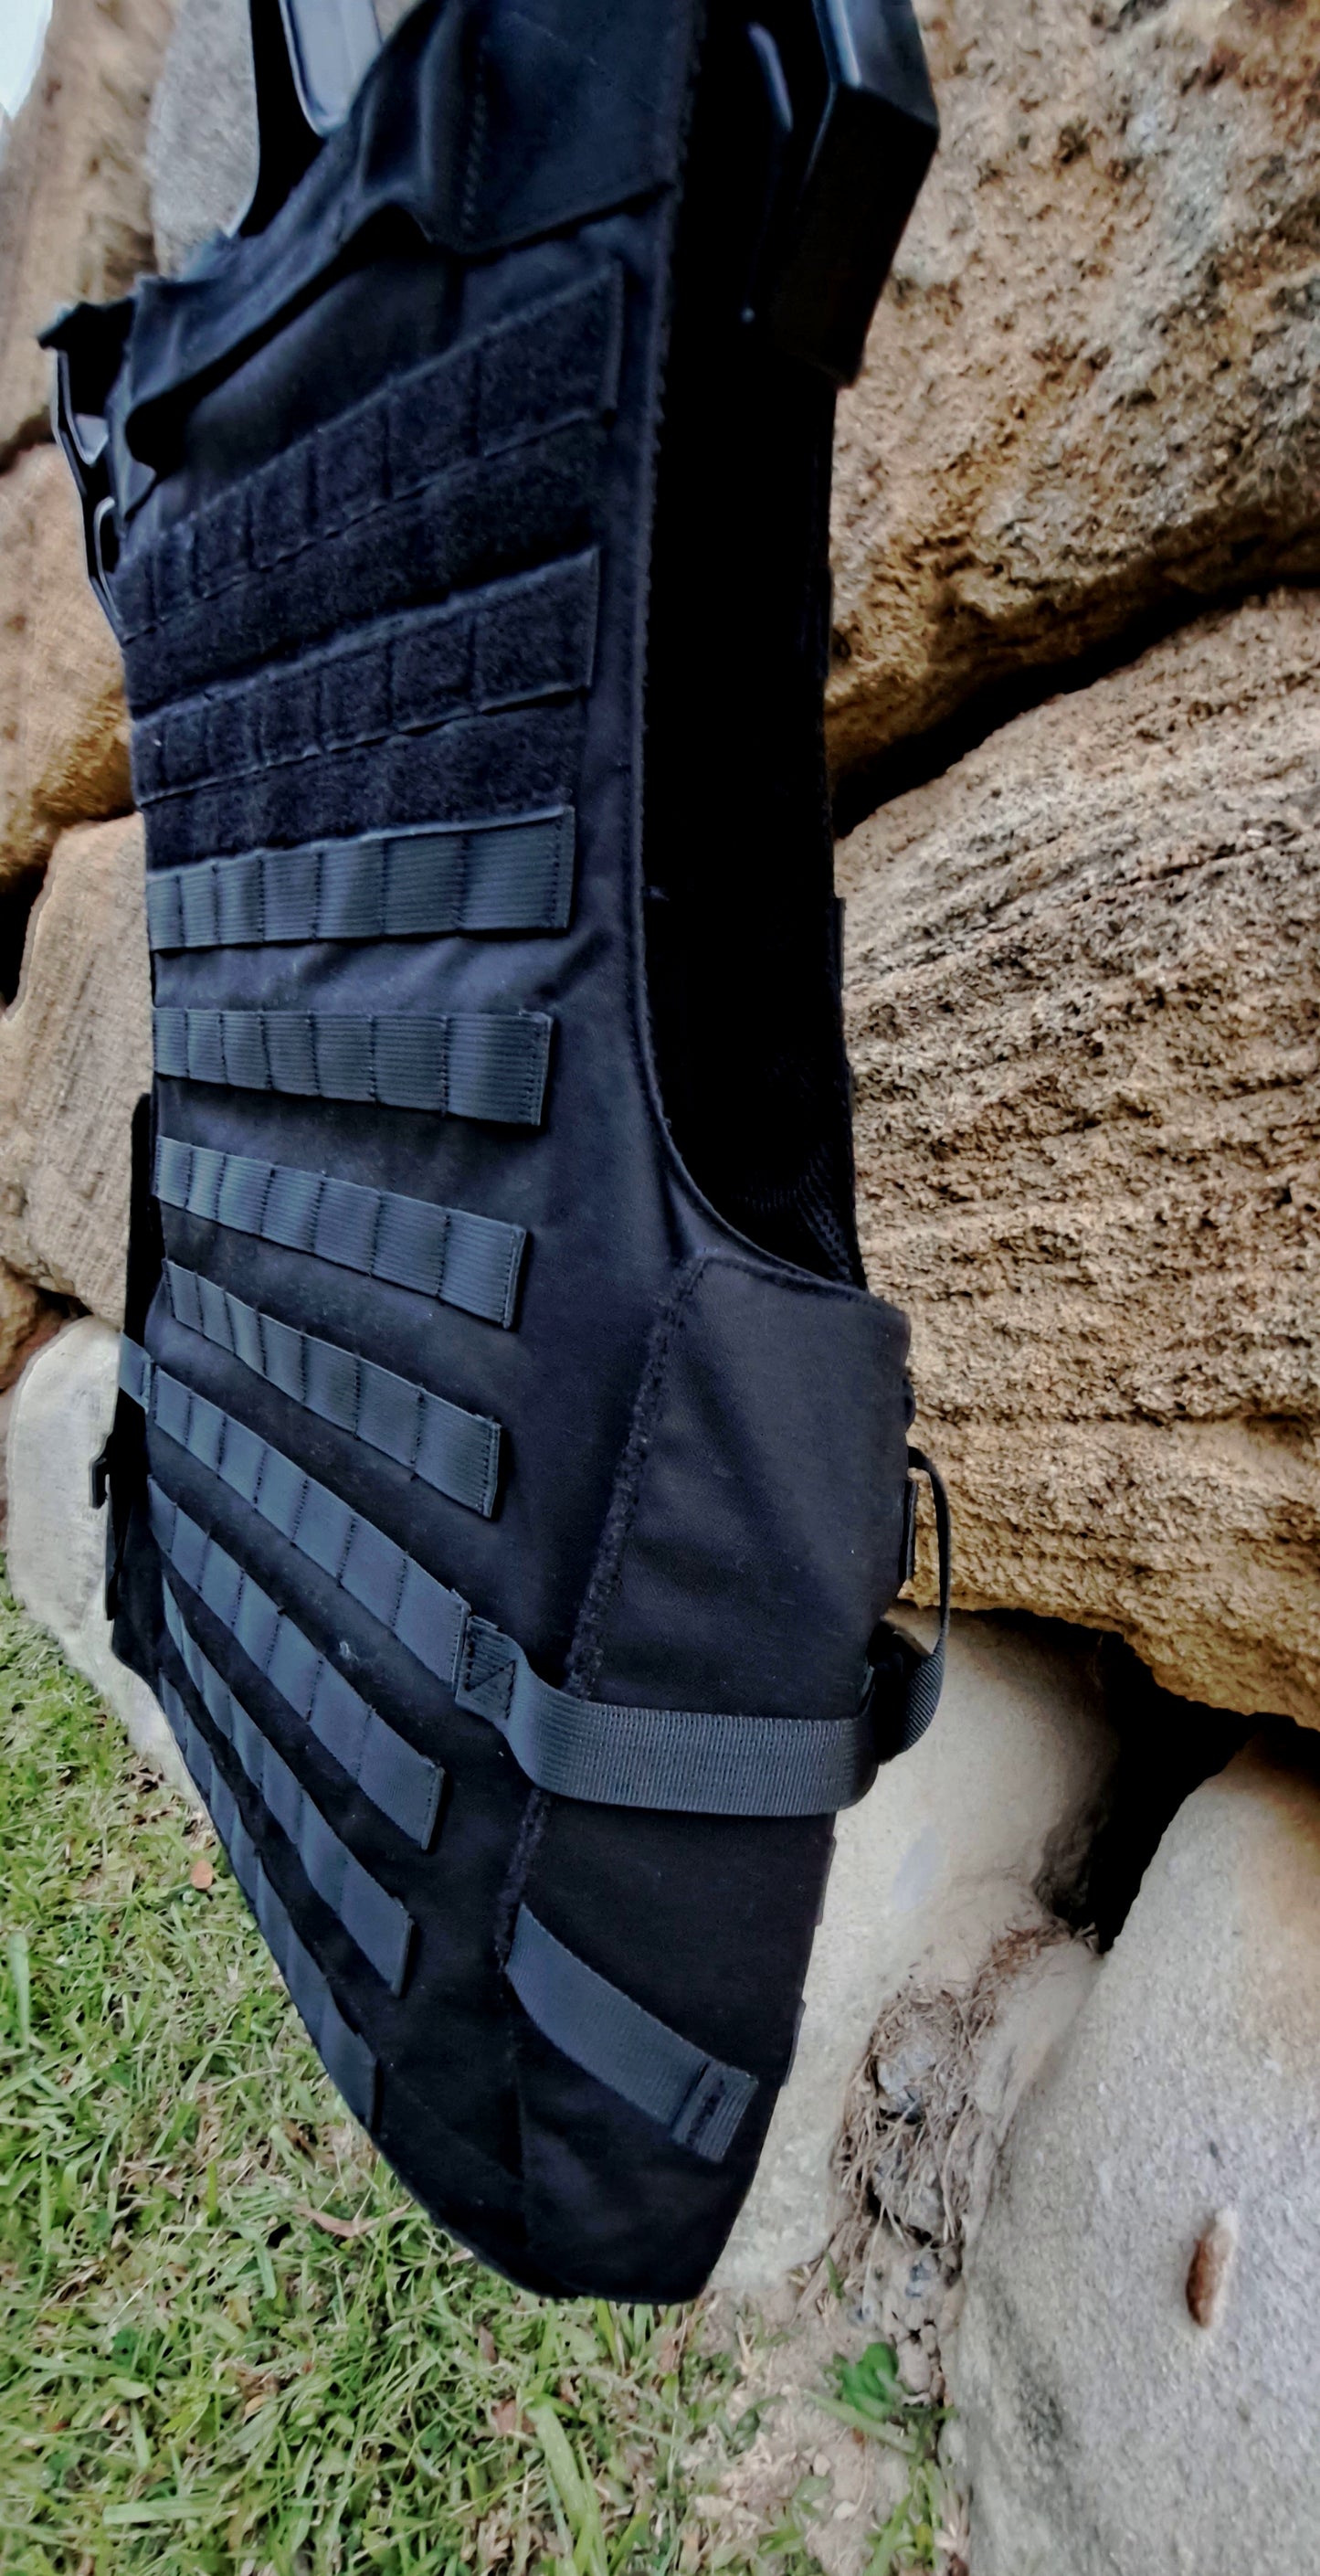 TAC-EDGE Stab Protection Vest NV-107